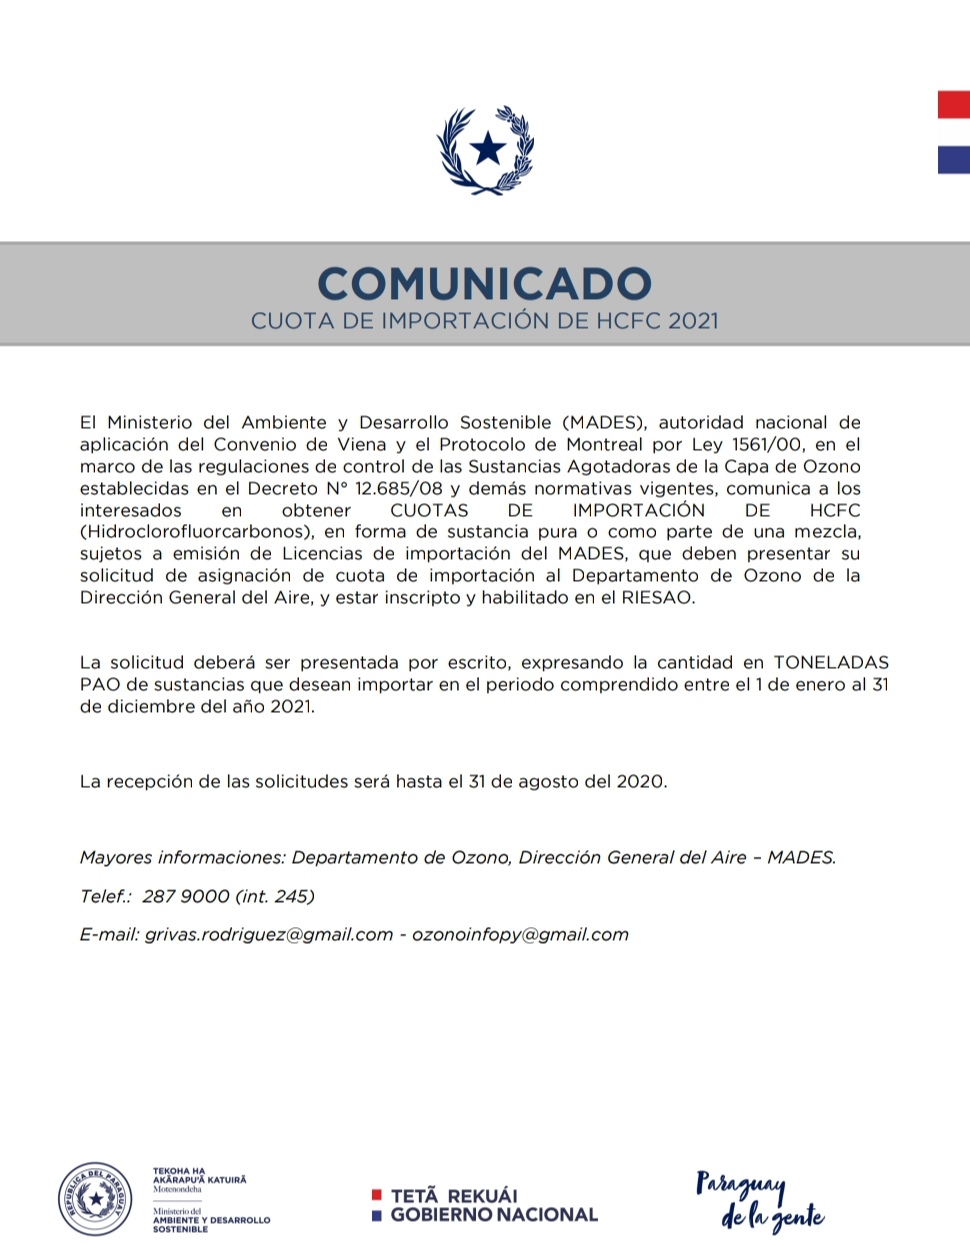 COMUNICADO – Cuota de importación de HCFC 2021